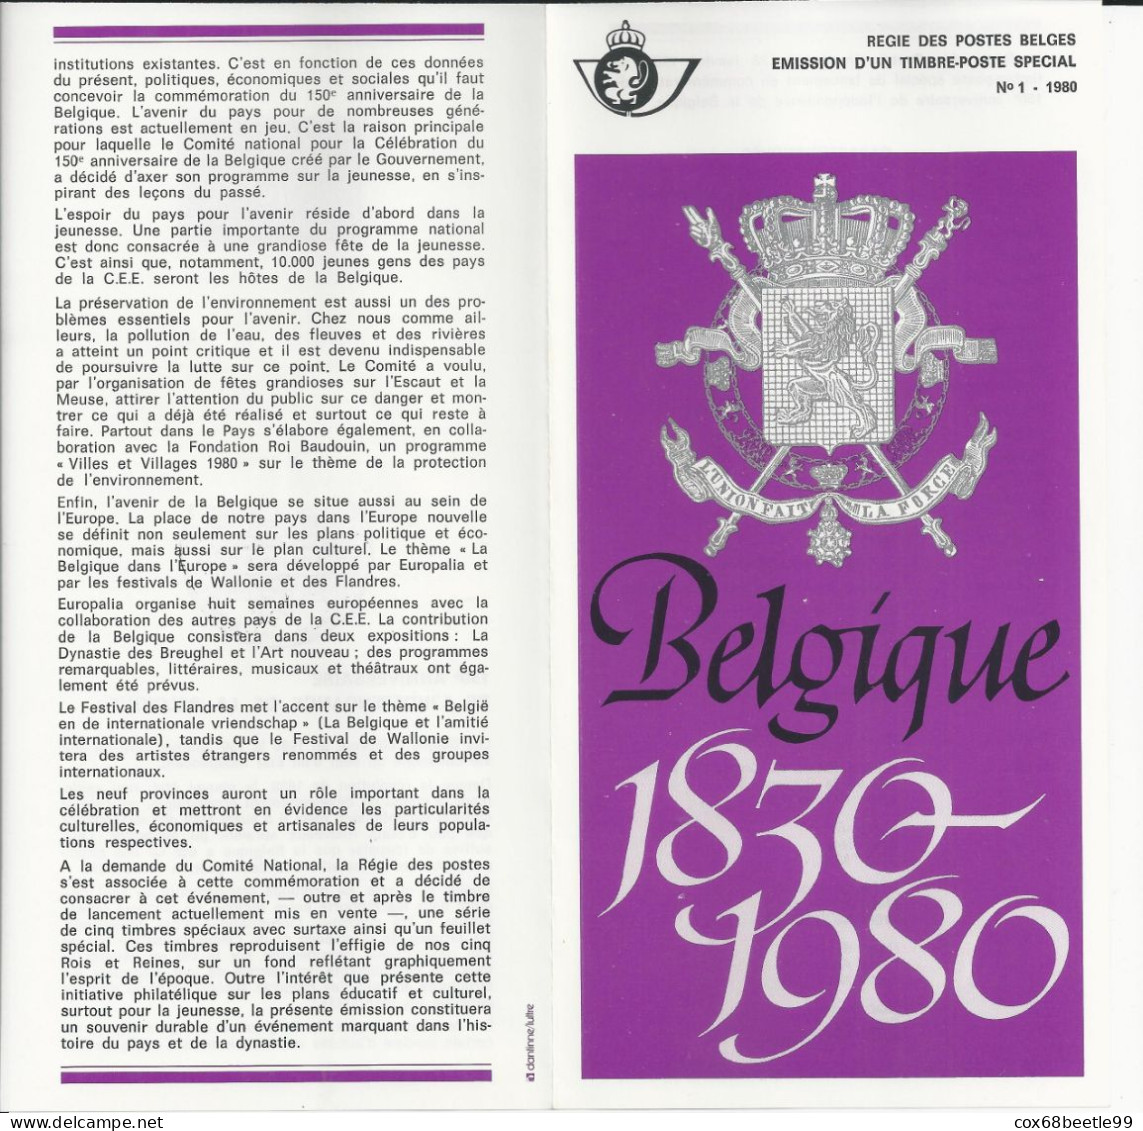 Belgique Feuillet De La Poste 1980-1 FDC Cob 1961 150 Ans 1930-1980 26-01-1980 BRUXELLES - Dépliants De La Poste